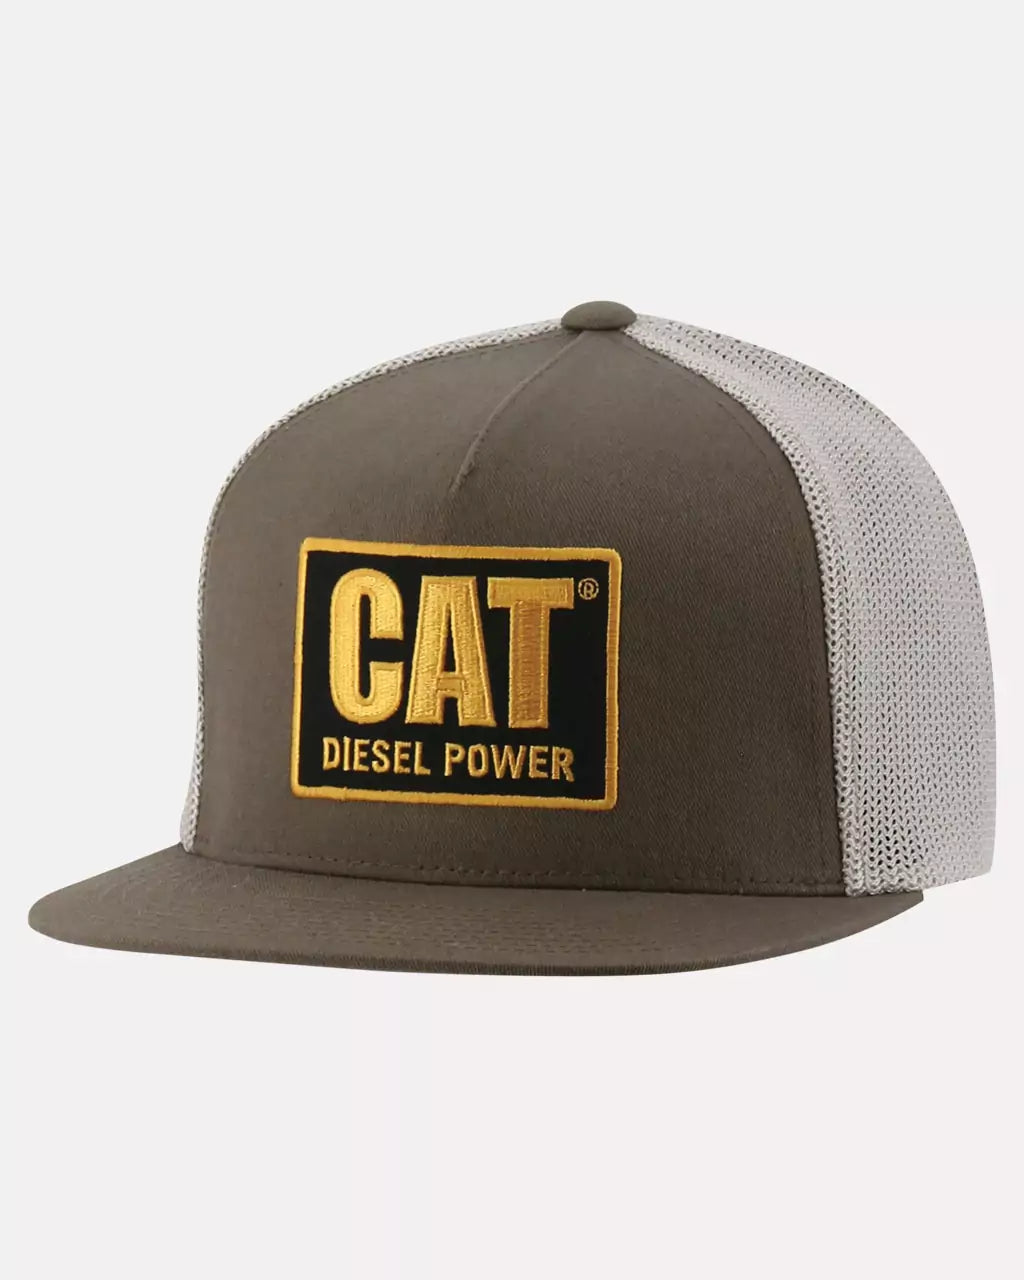 Men's Diesel Power Flexfit Trucker Hat